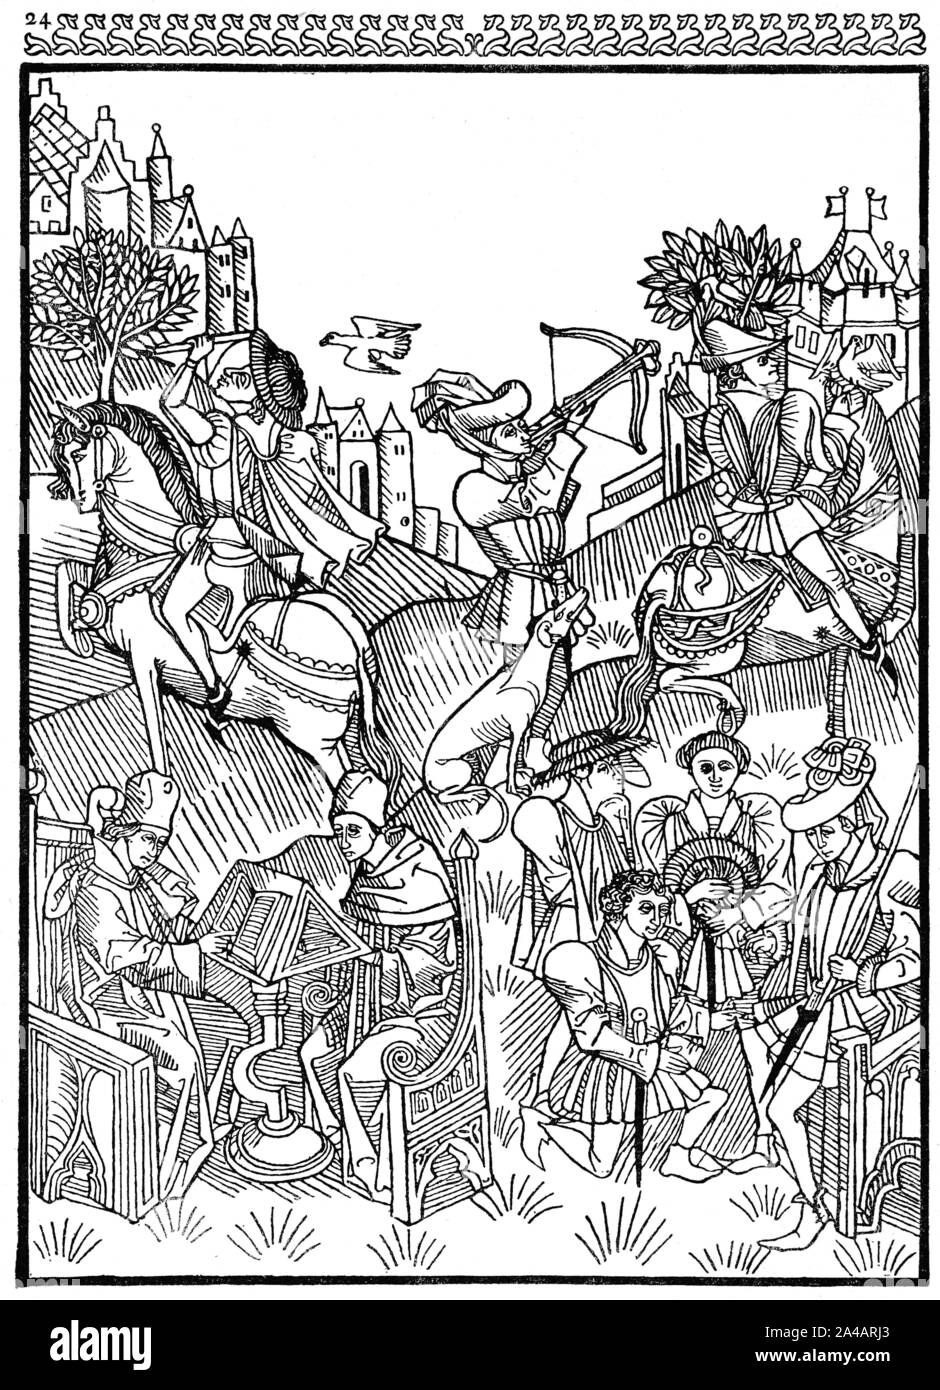 La vita medievale, Xilografia, influenza dei pianeti, sinistra due studiosi alla scrivania, destra cavallereschi, Einwirkung der Planeten, 1470 Foto Stock